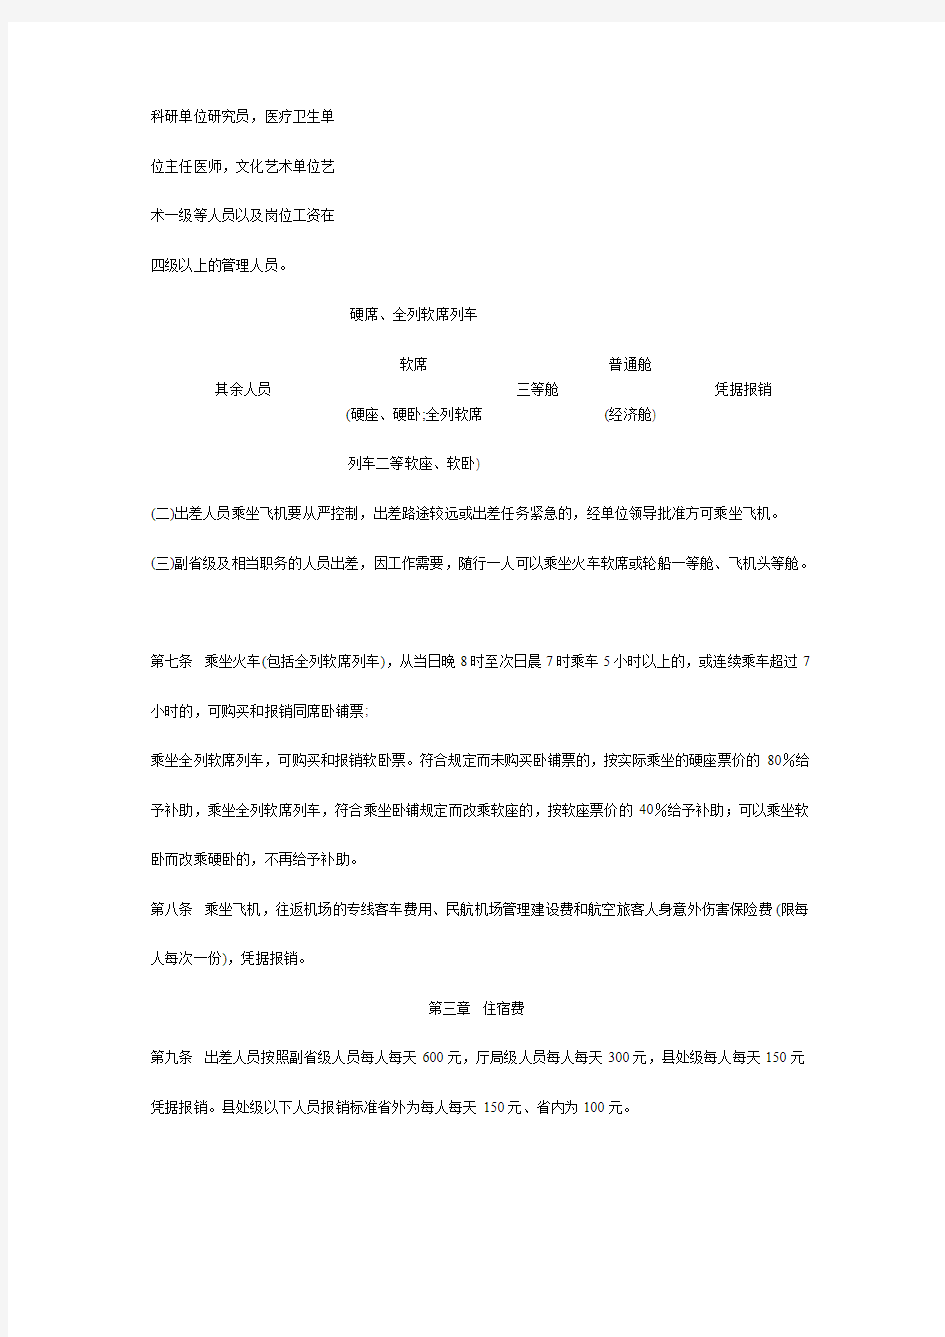 江西省省直机关和事业单位差旅费管理办法